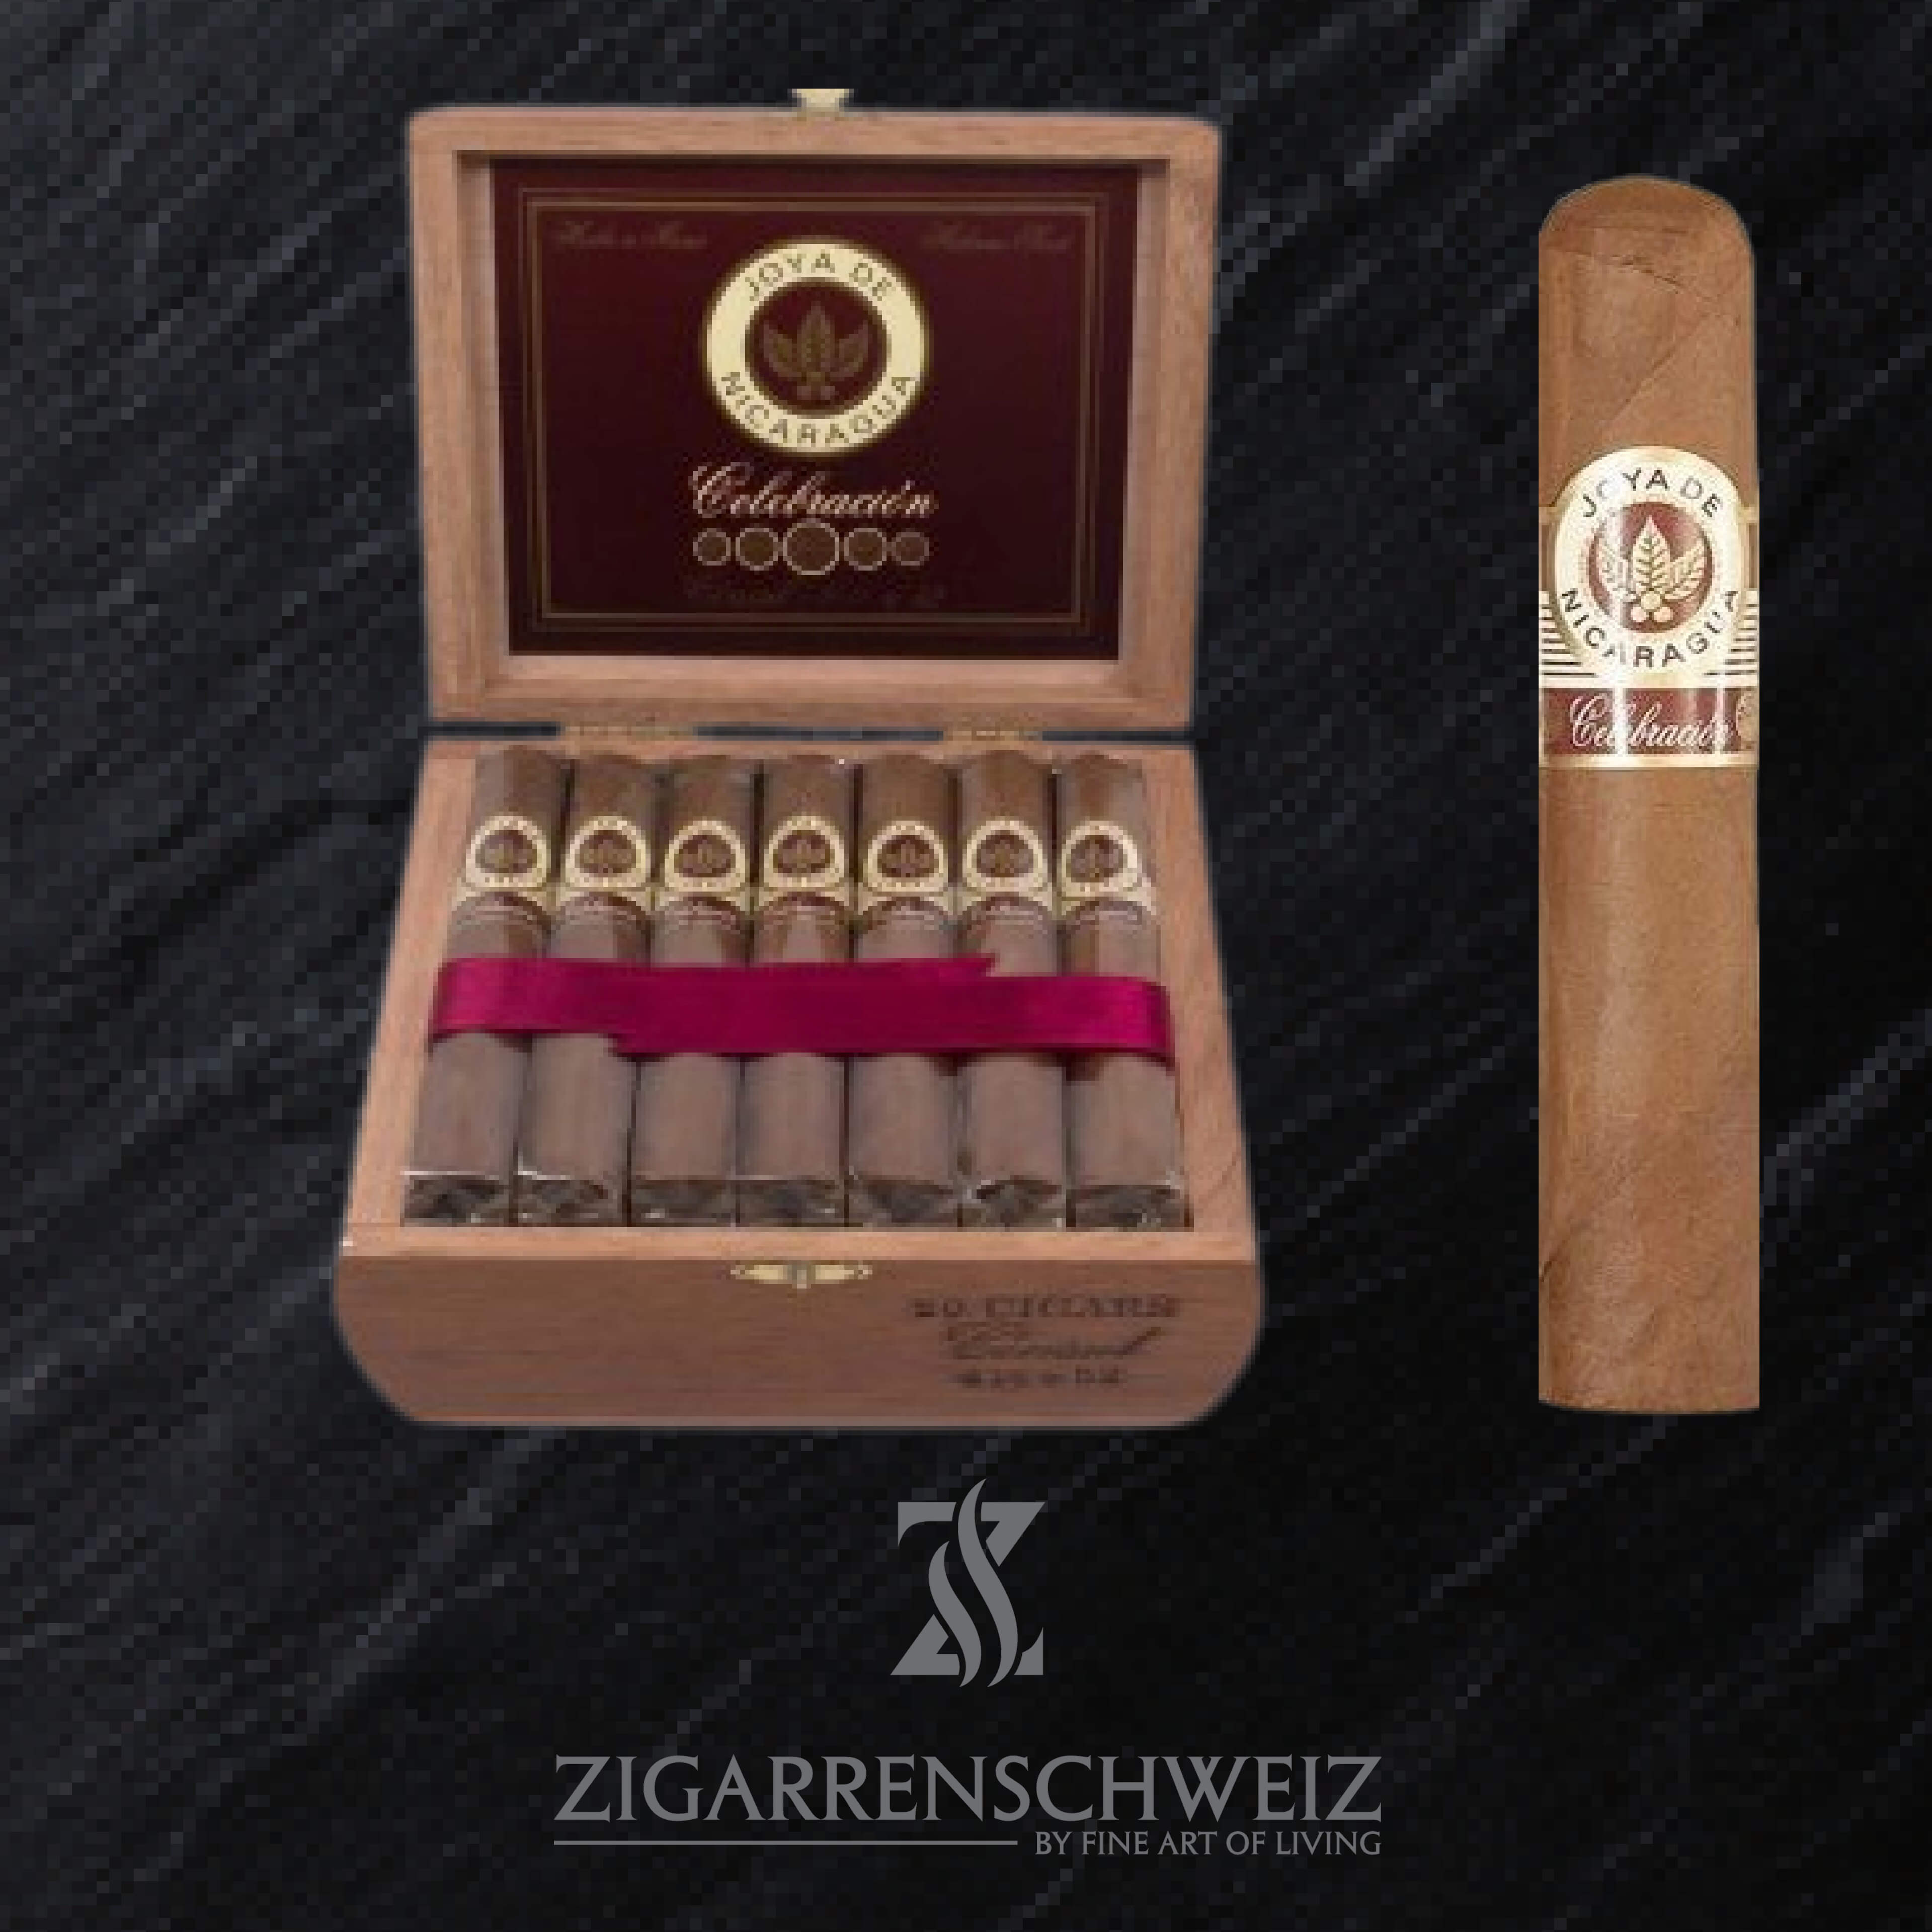 Joya de Nicaragua Celebracion Consul Robusto 20er Zigarren Kiste offen